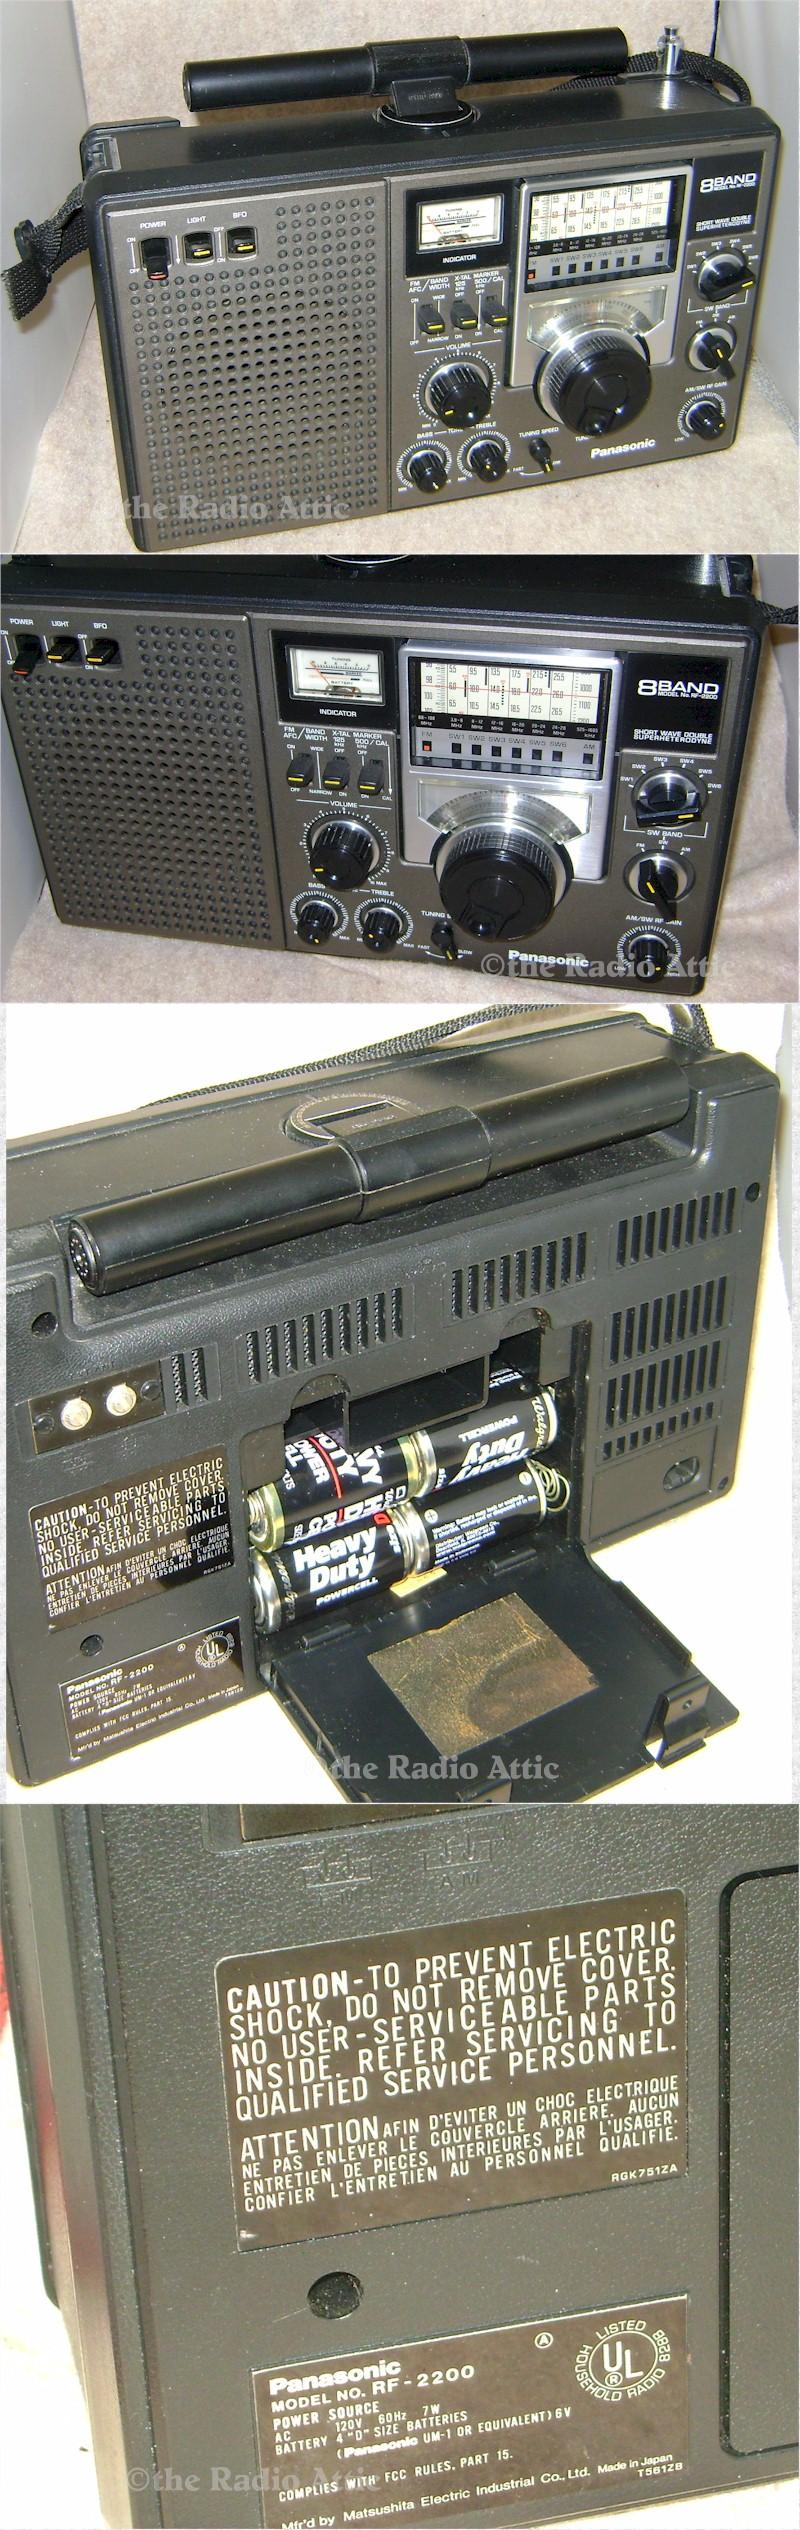 Panasonic RF-2200 Eight Band Portable - 1978